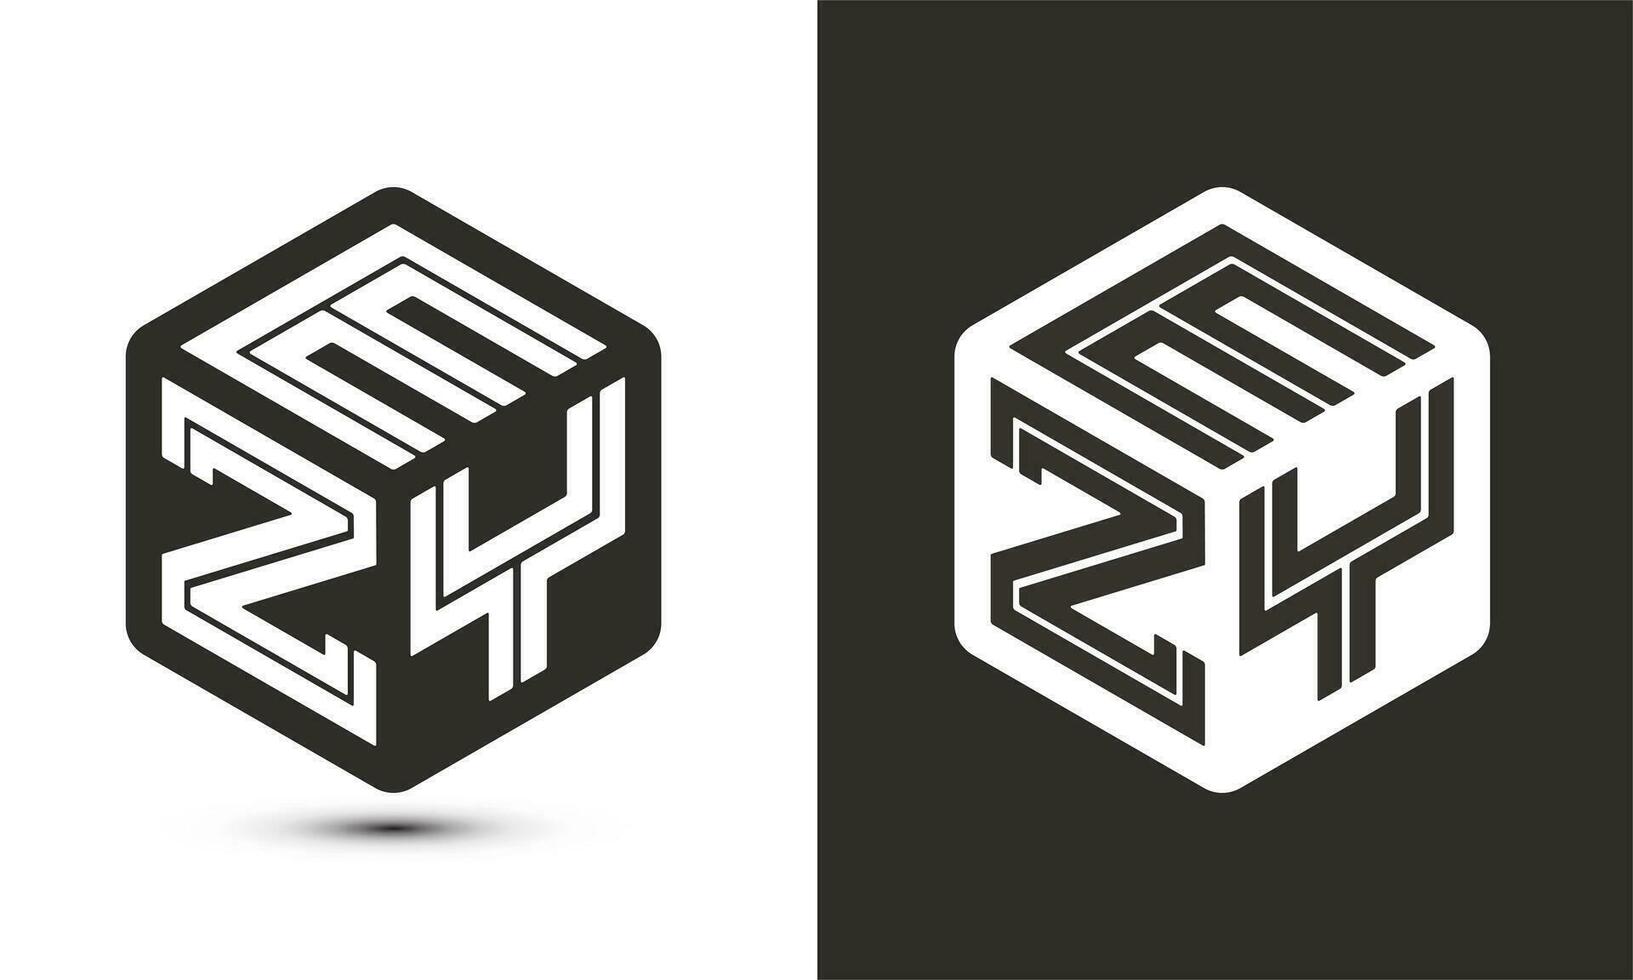 ezy brief logo ontwerp met illustrator kubus logo, vector logo modern alfabet doopvont overlappen stijl.